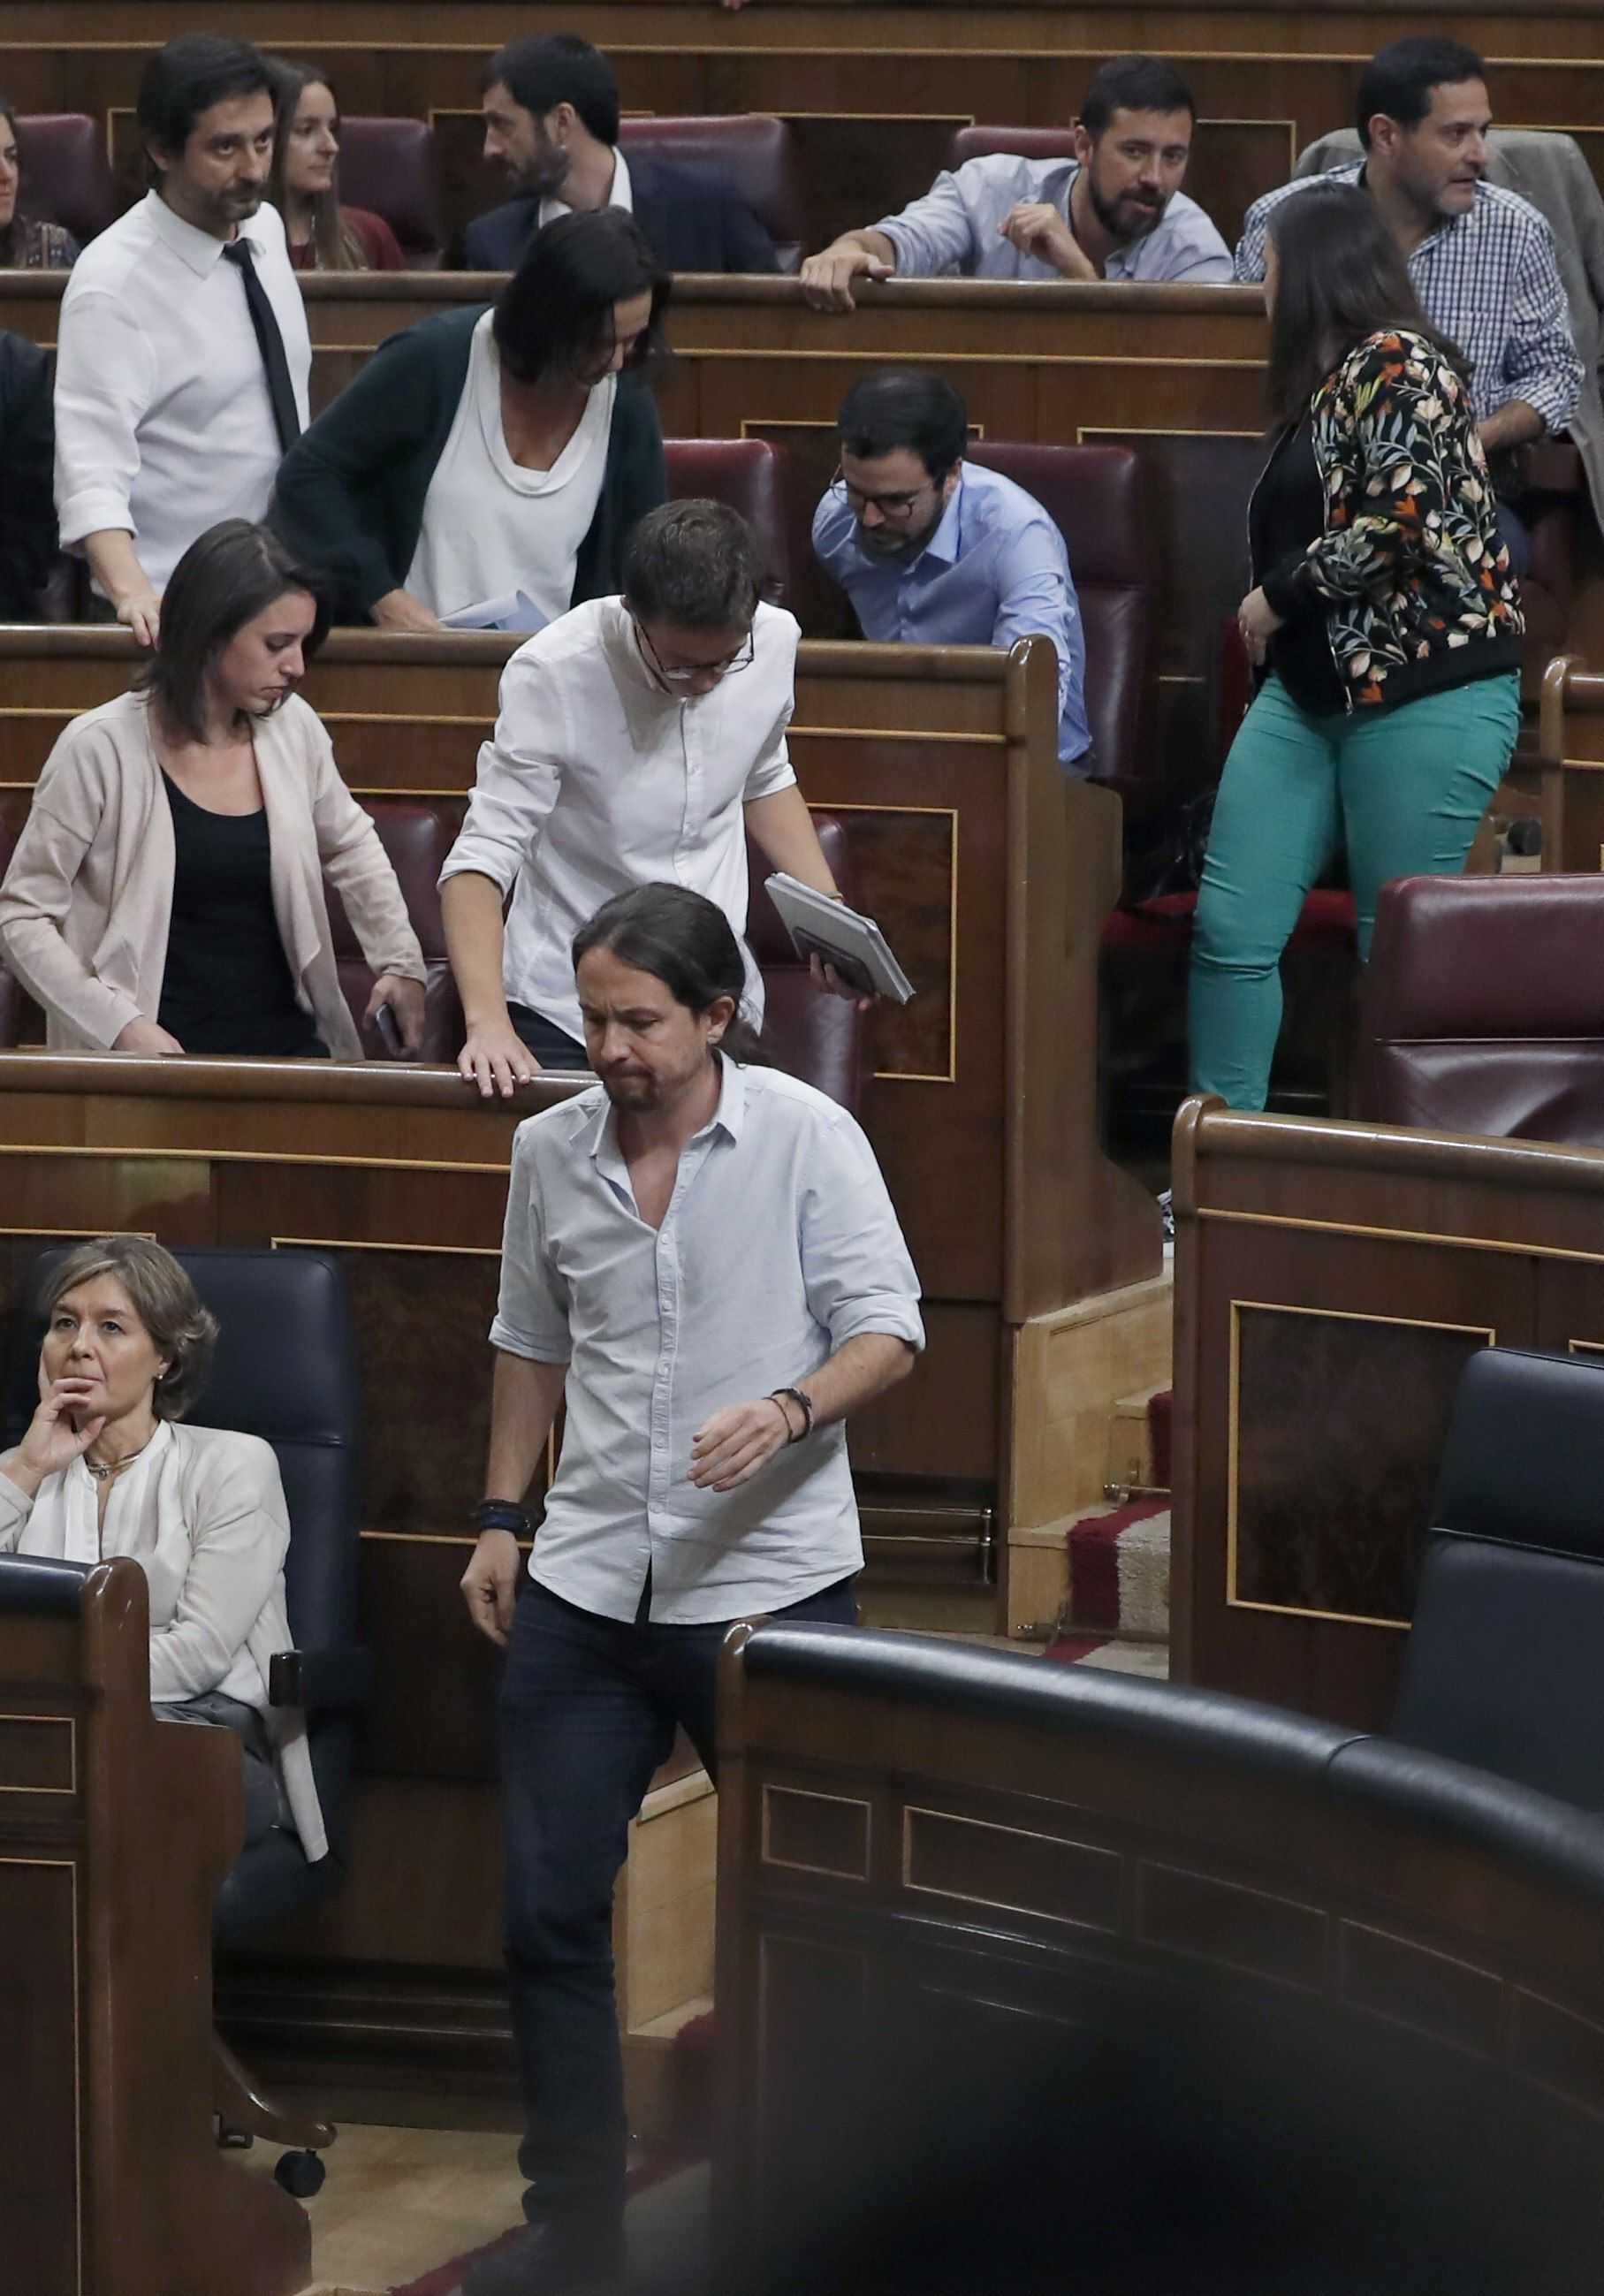 Vídeo: Podemos abandona la cambra perquè no se'ls dóna la paraula